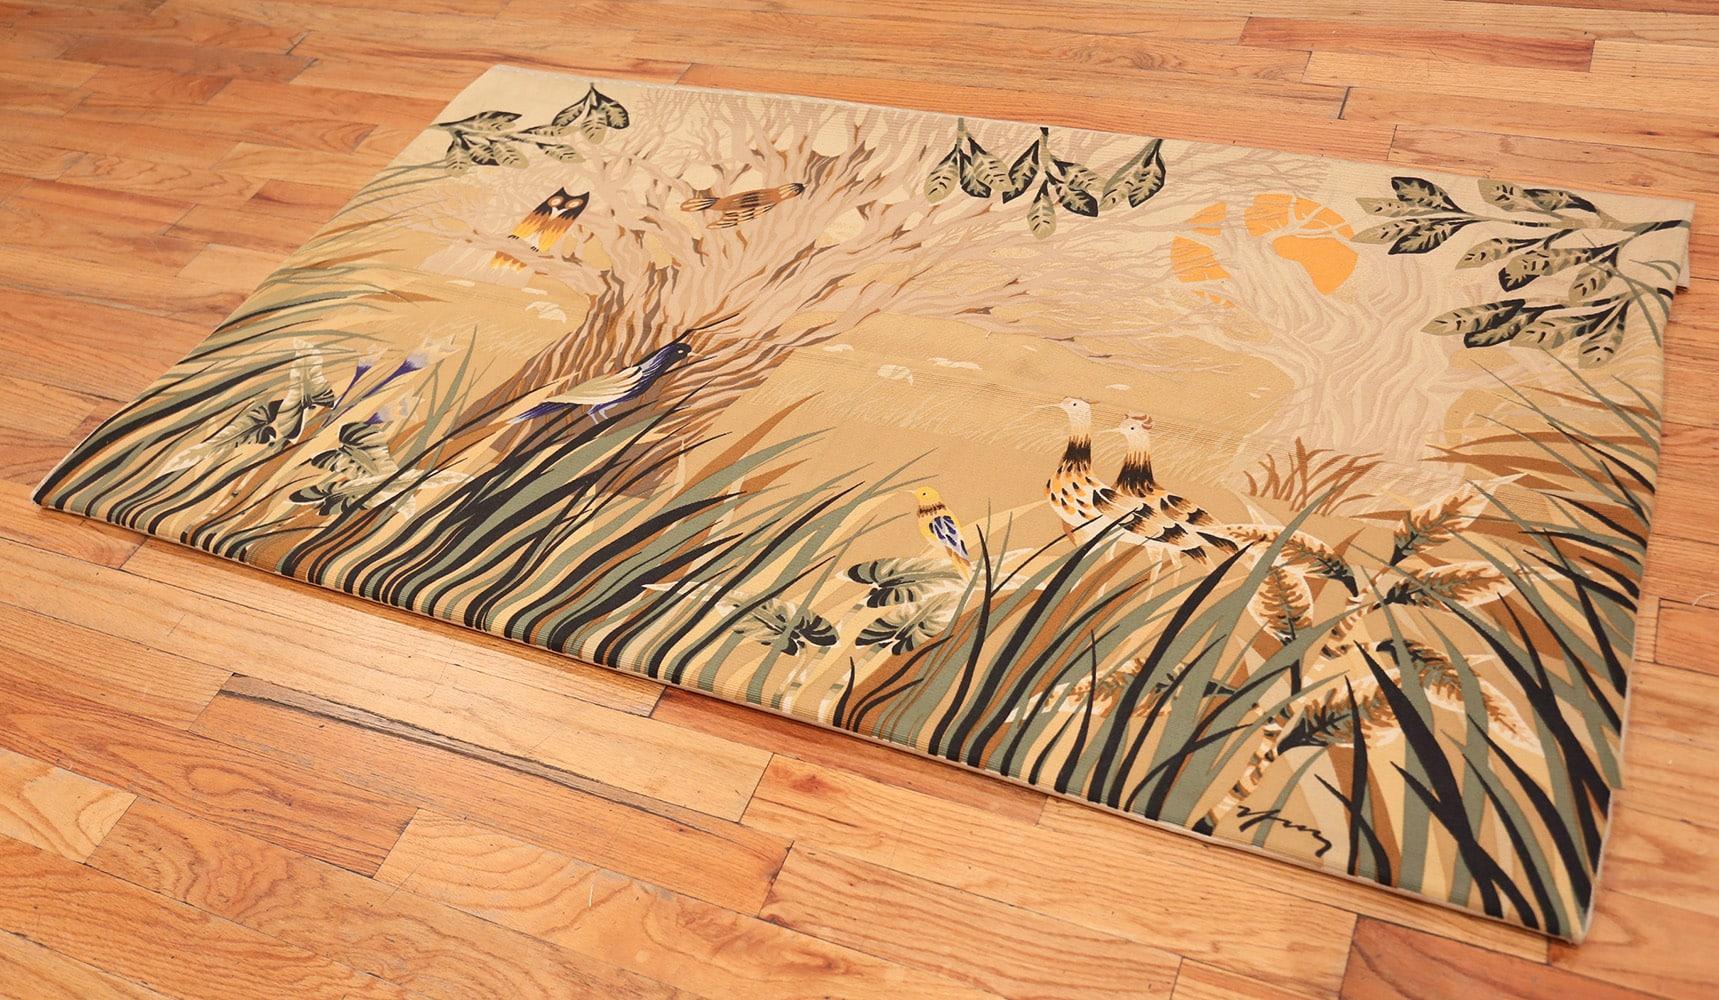 Vintage French Tapestry Rug, Herkunft: Frankreich, CIRCA: Mitte 20. Jahrhundert. Größe: 1,83 m x 1,07 m (6 ft x 3 ft 6 in)

